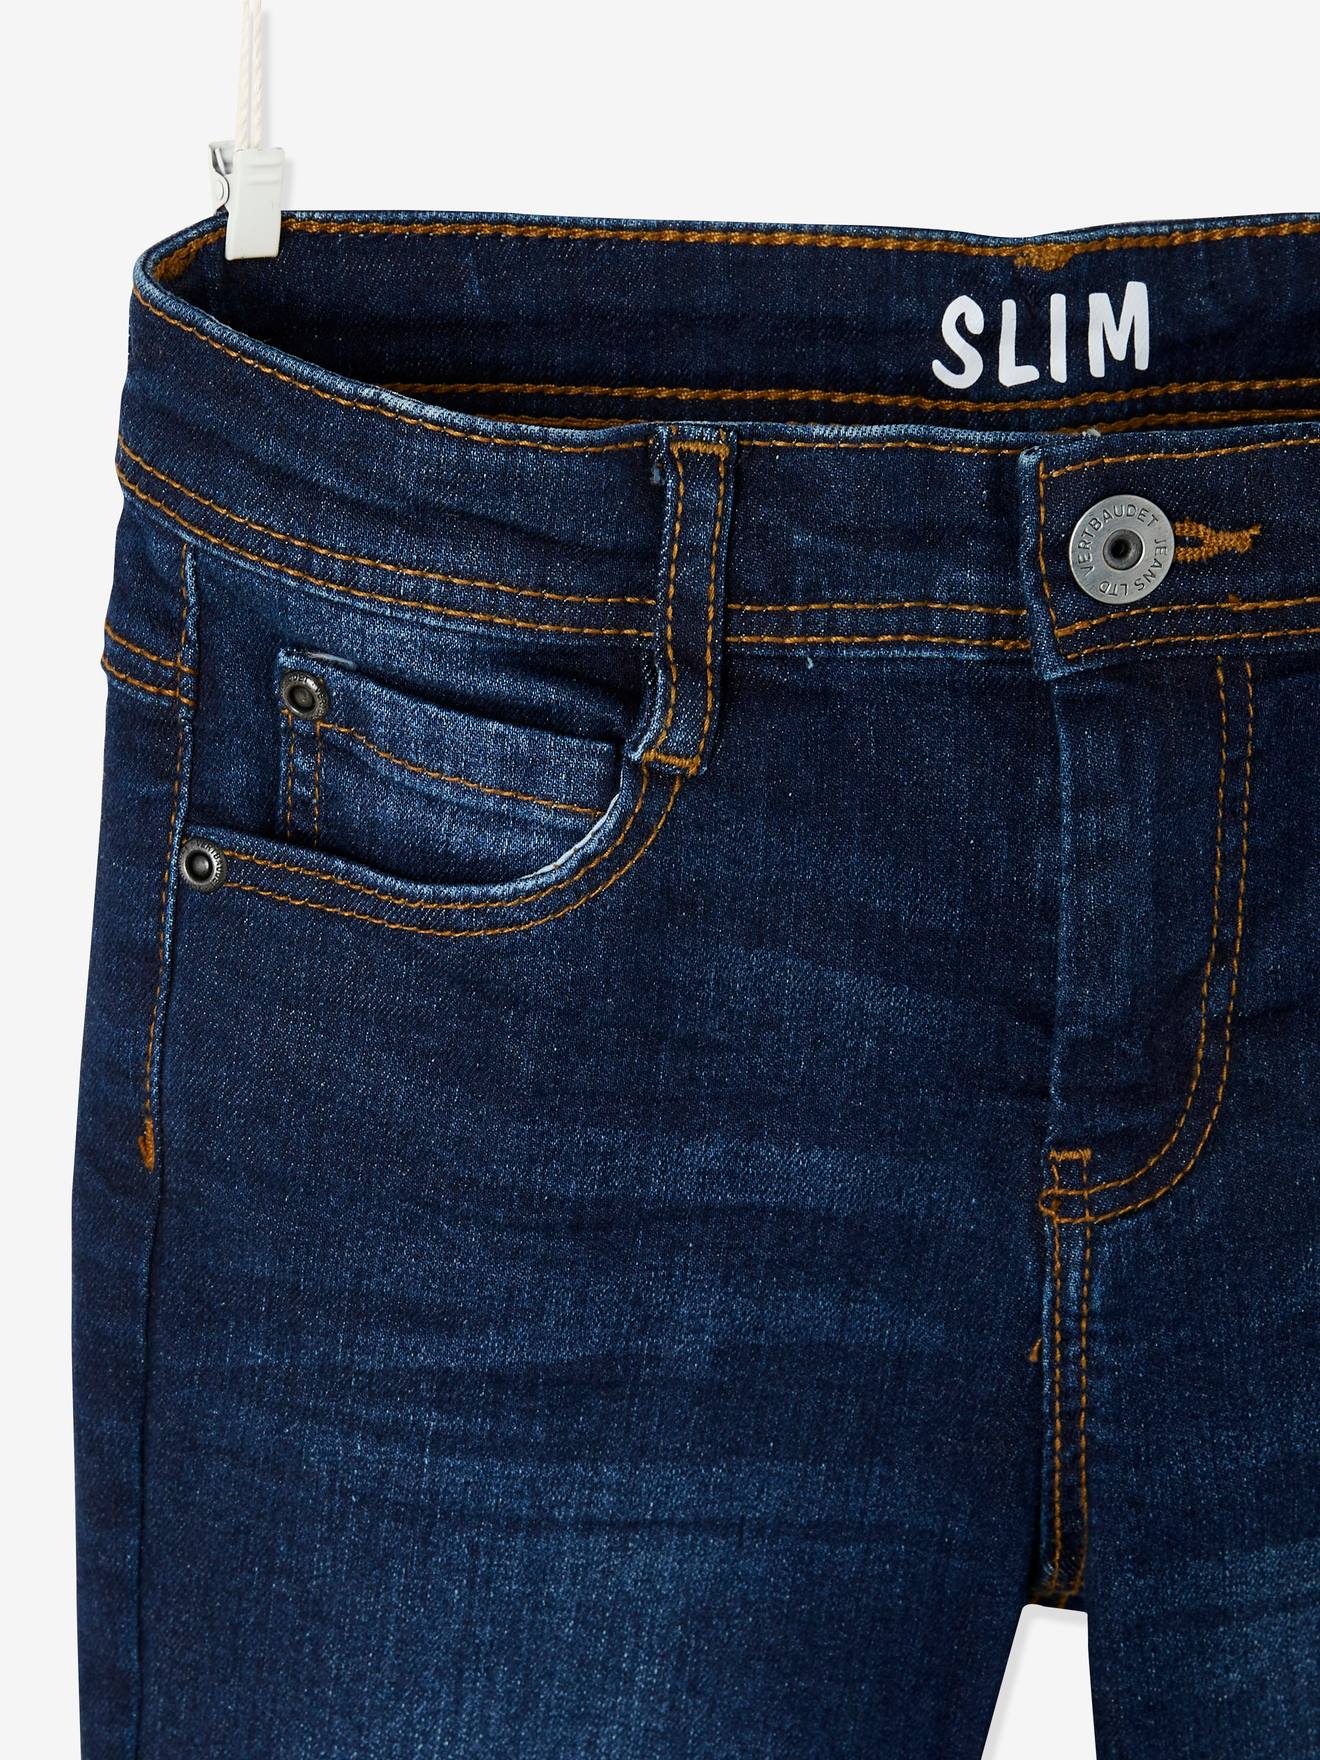 LAPLBEKE Jeans Garçons Pantalon Déchiré en Denim Extensible Skinny Fit 